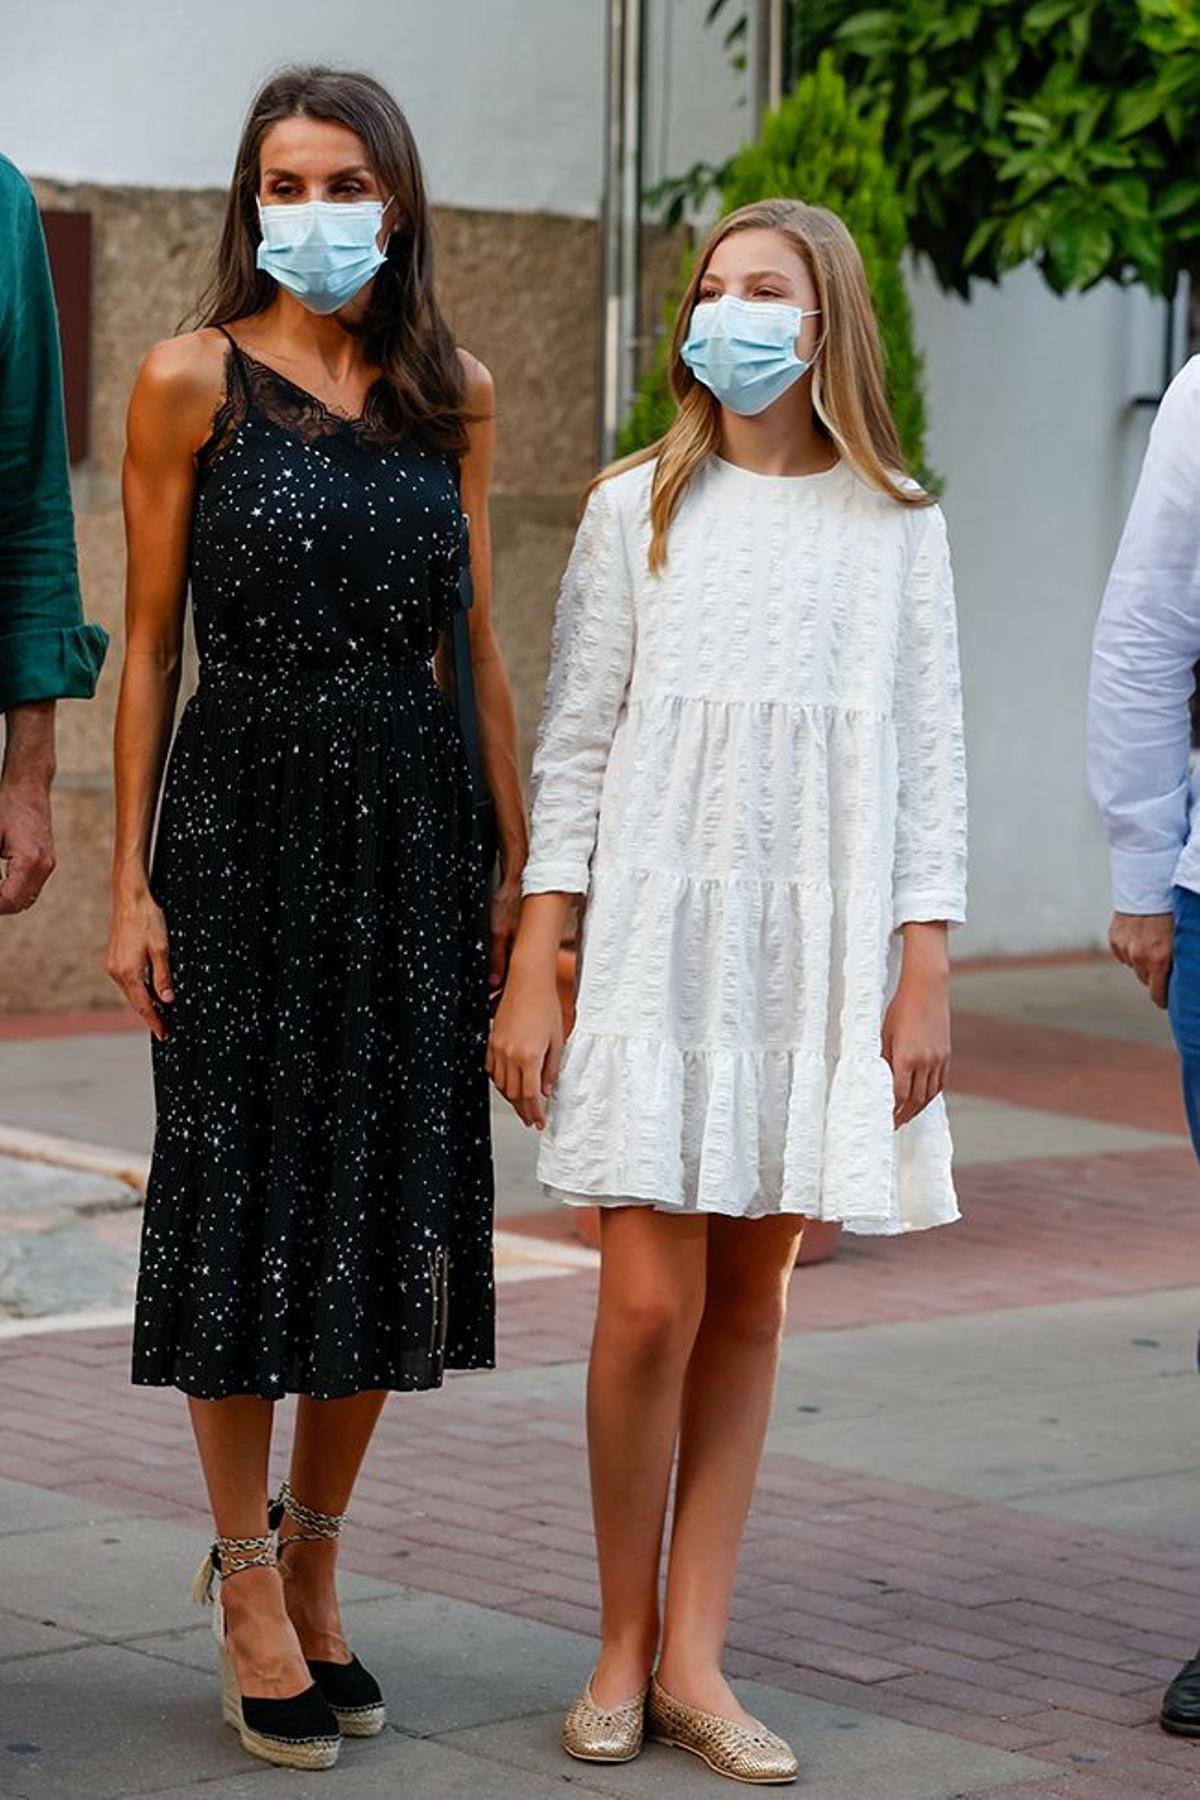 La reina Letizia y la infanta Sofía posan juntas con estilismos muy distintos